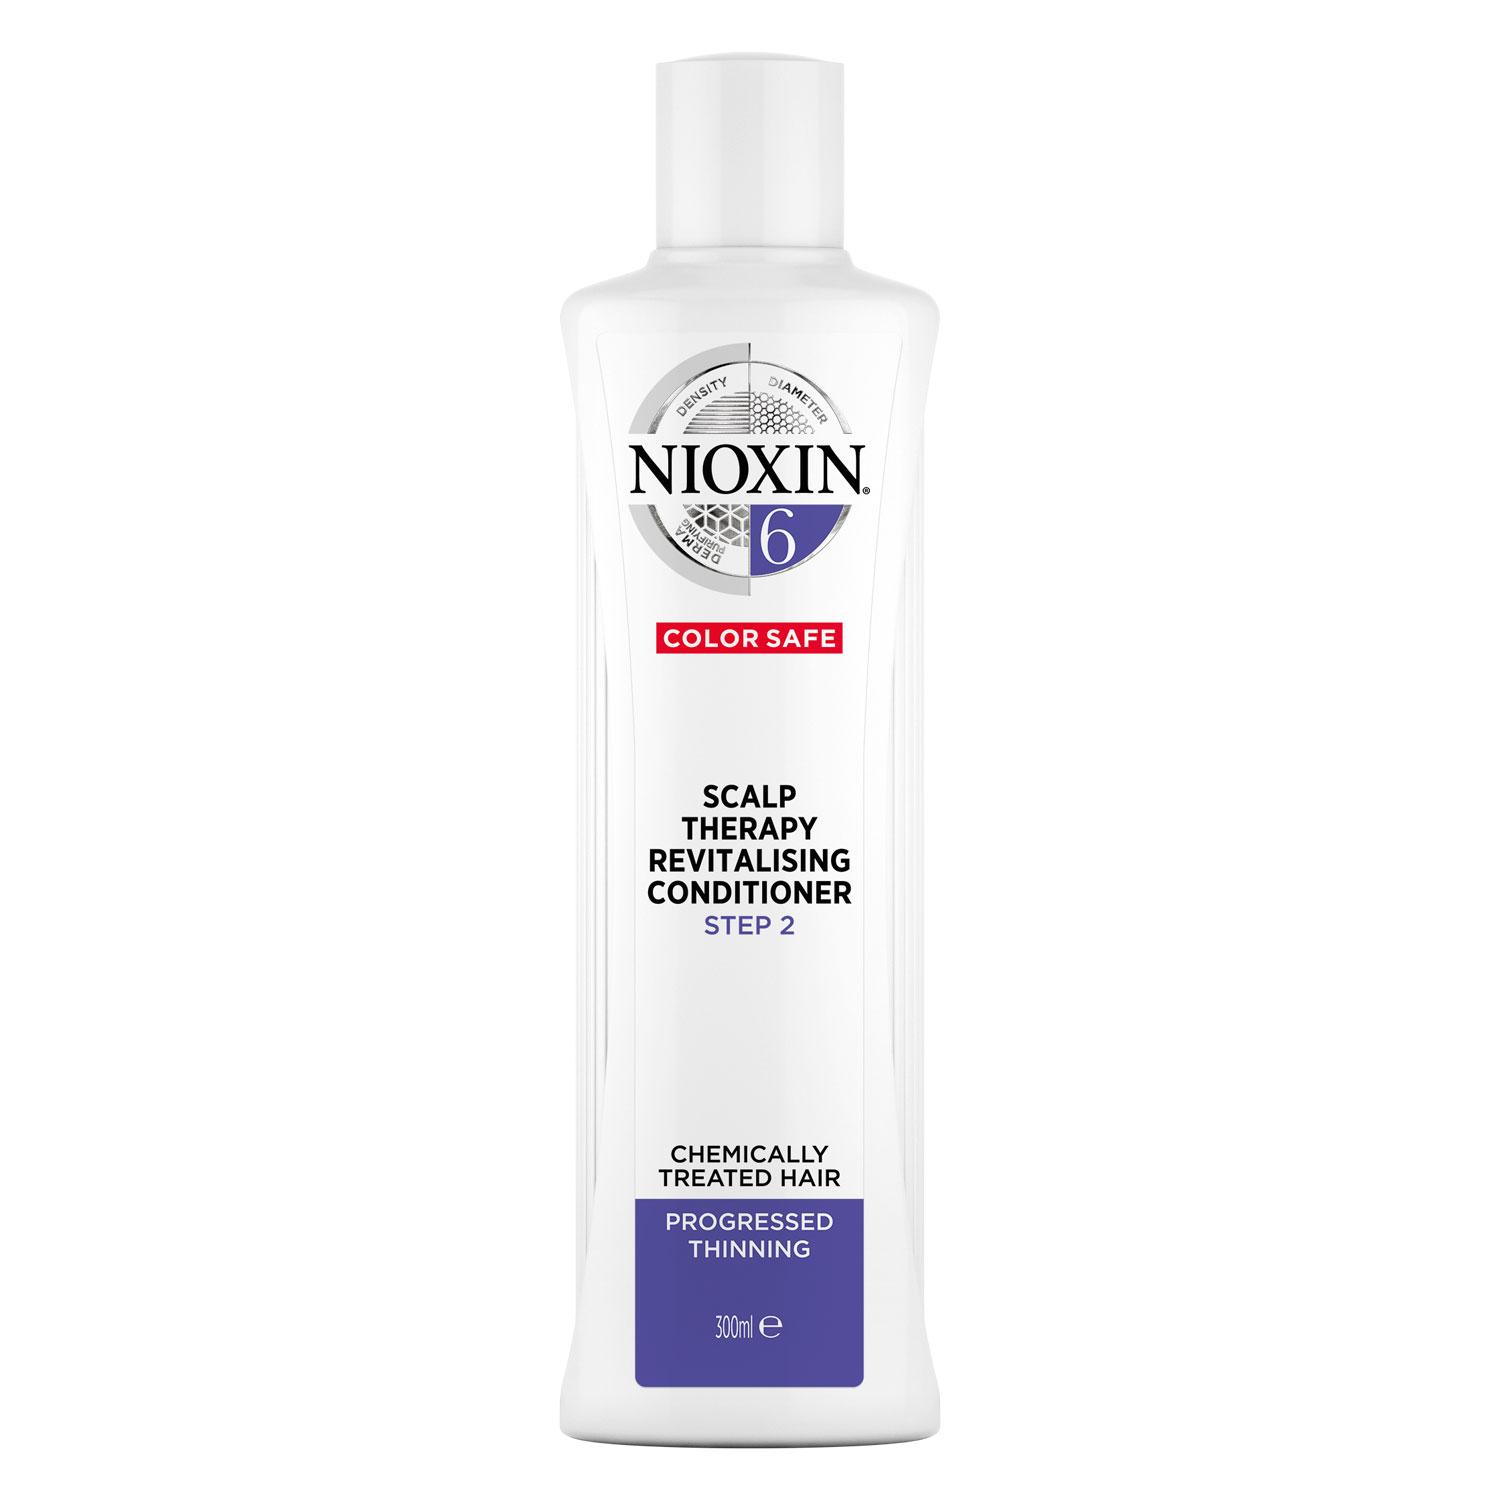 Nioxin - Scalp Revitaliser 6 